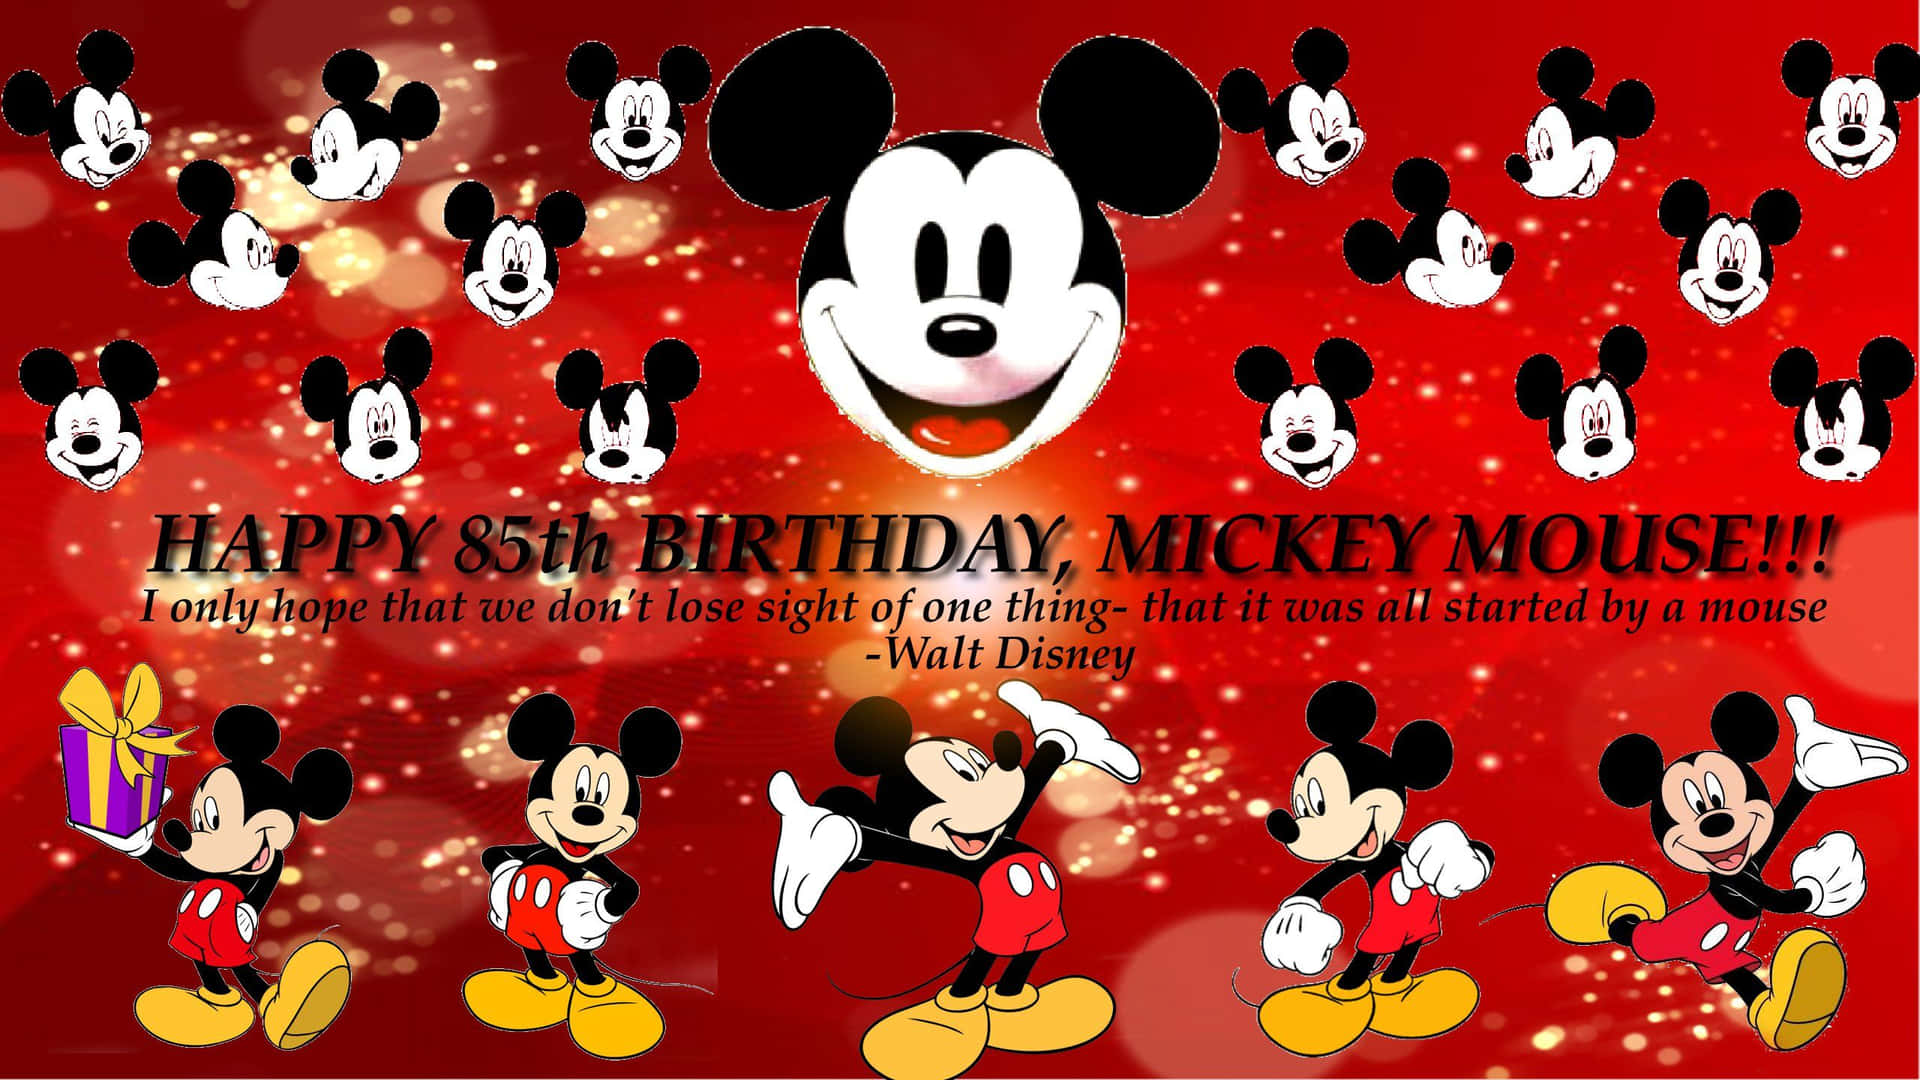 Disney Birthday 2560 X 1440